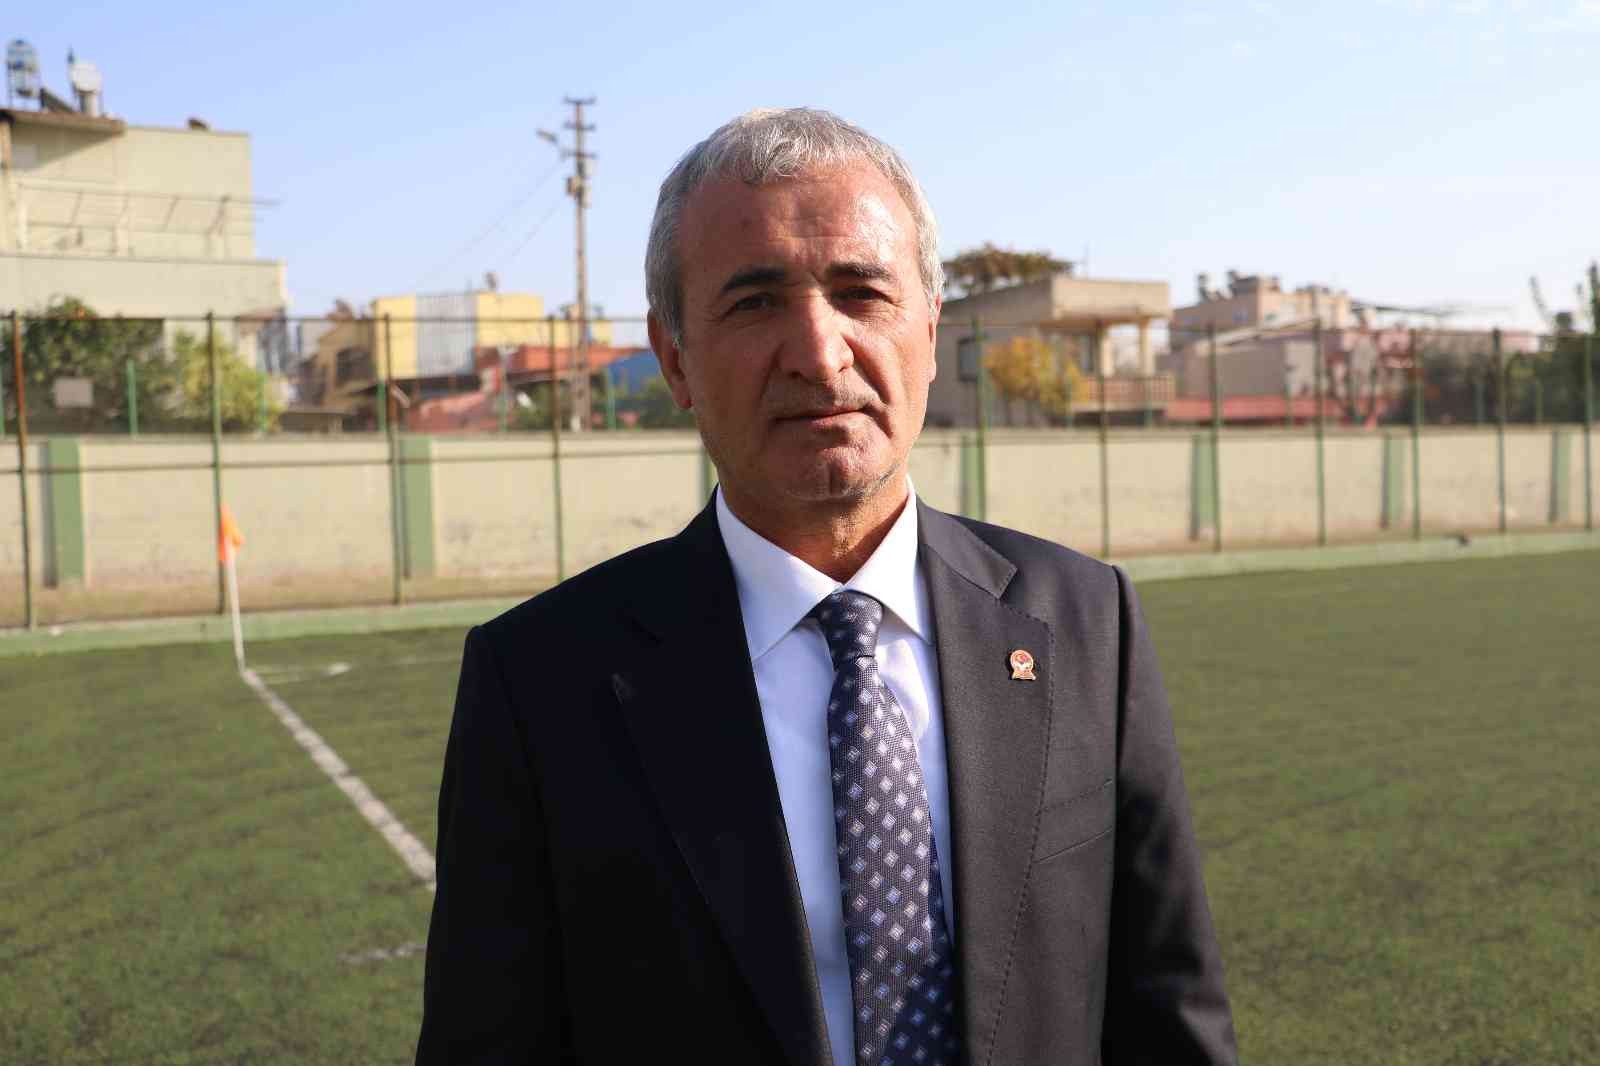 Adana’da C Antrenör Kursu devam ediyor #adana